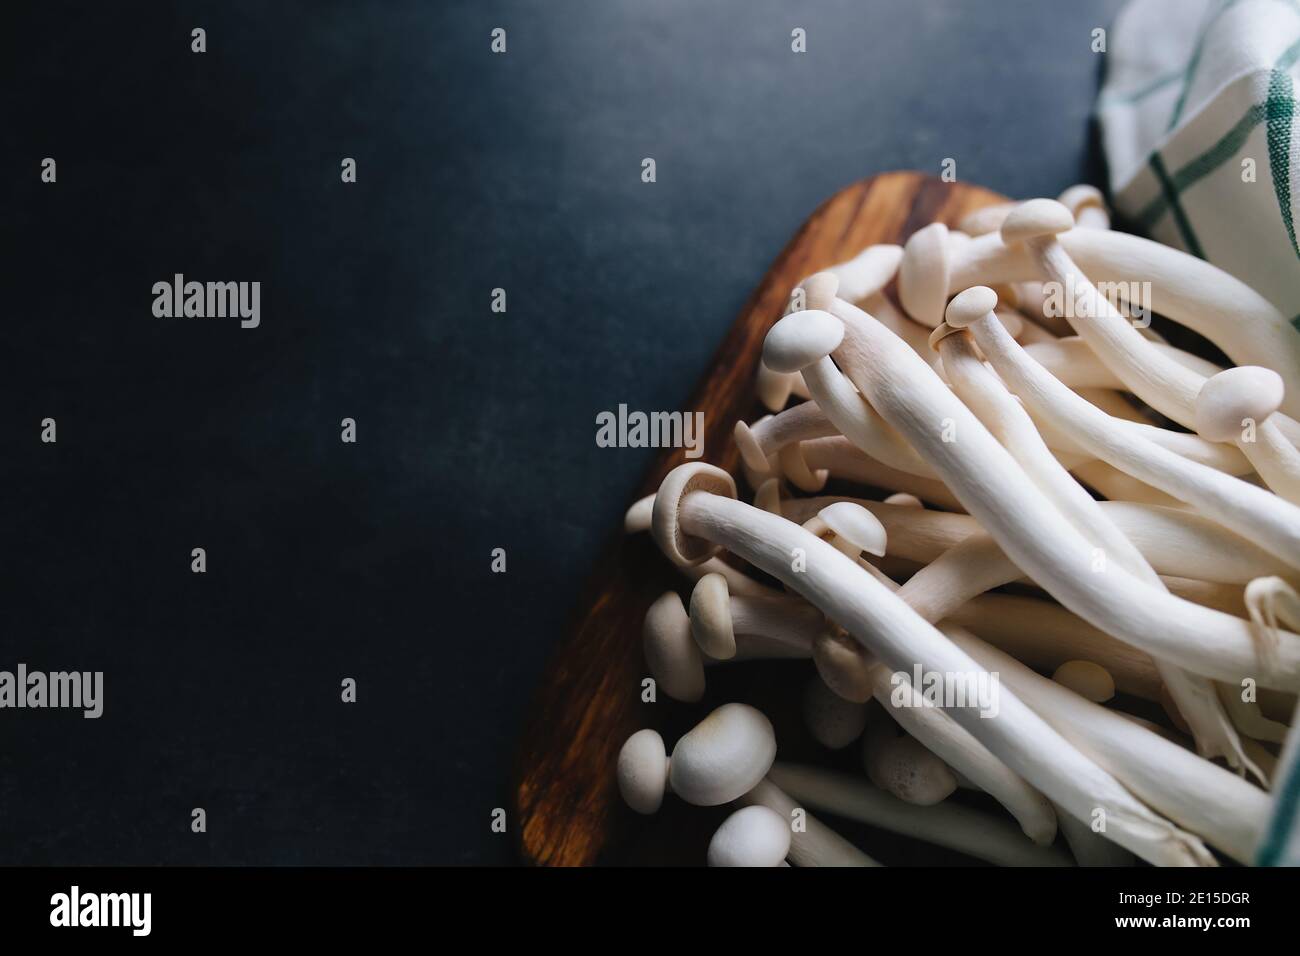 Cuisson de champignons blancs sur fond gris foncé Banque D'Images